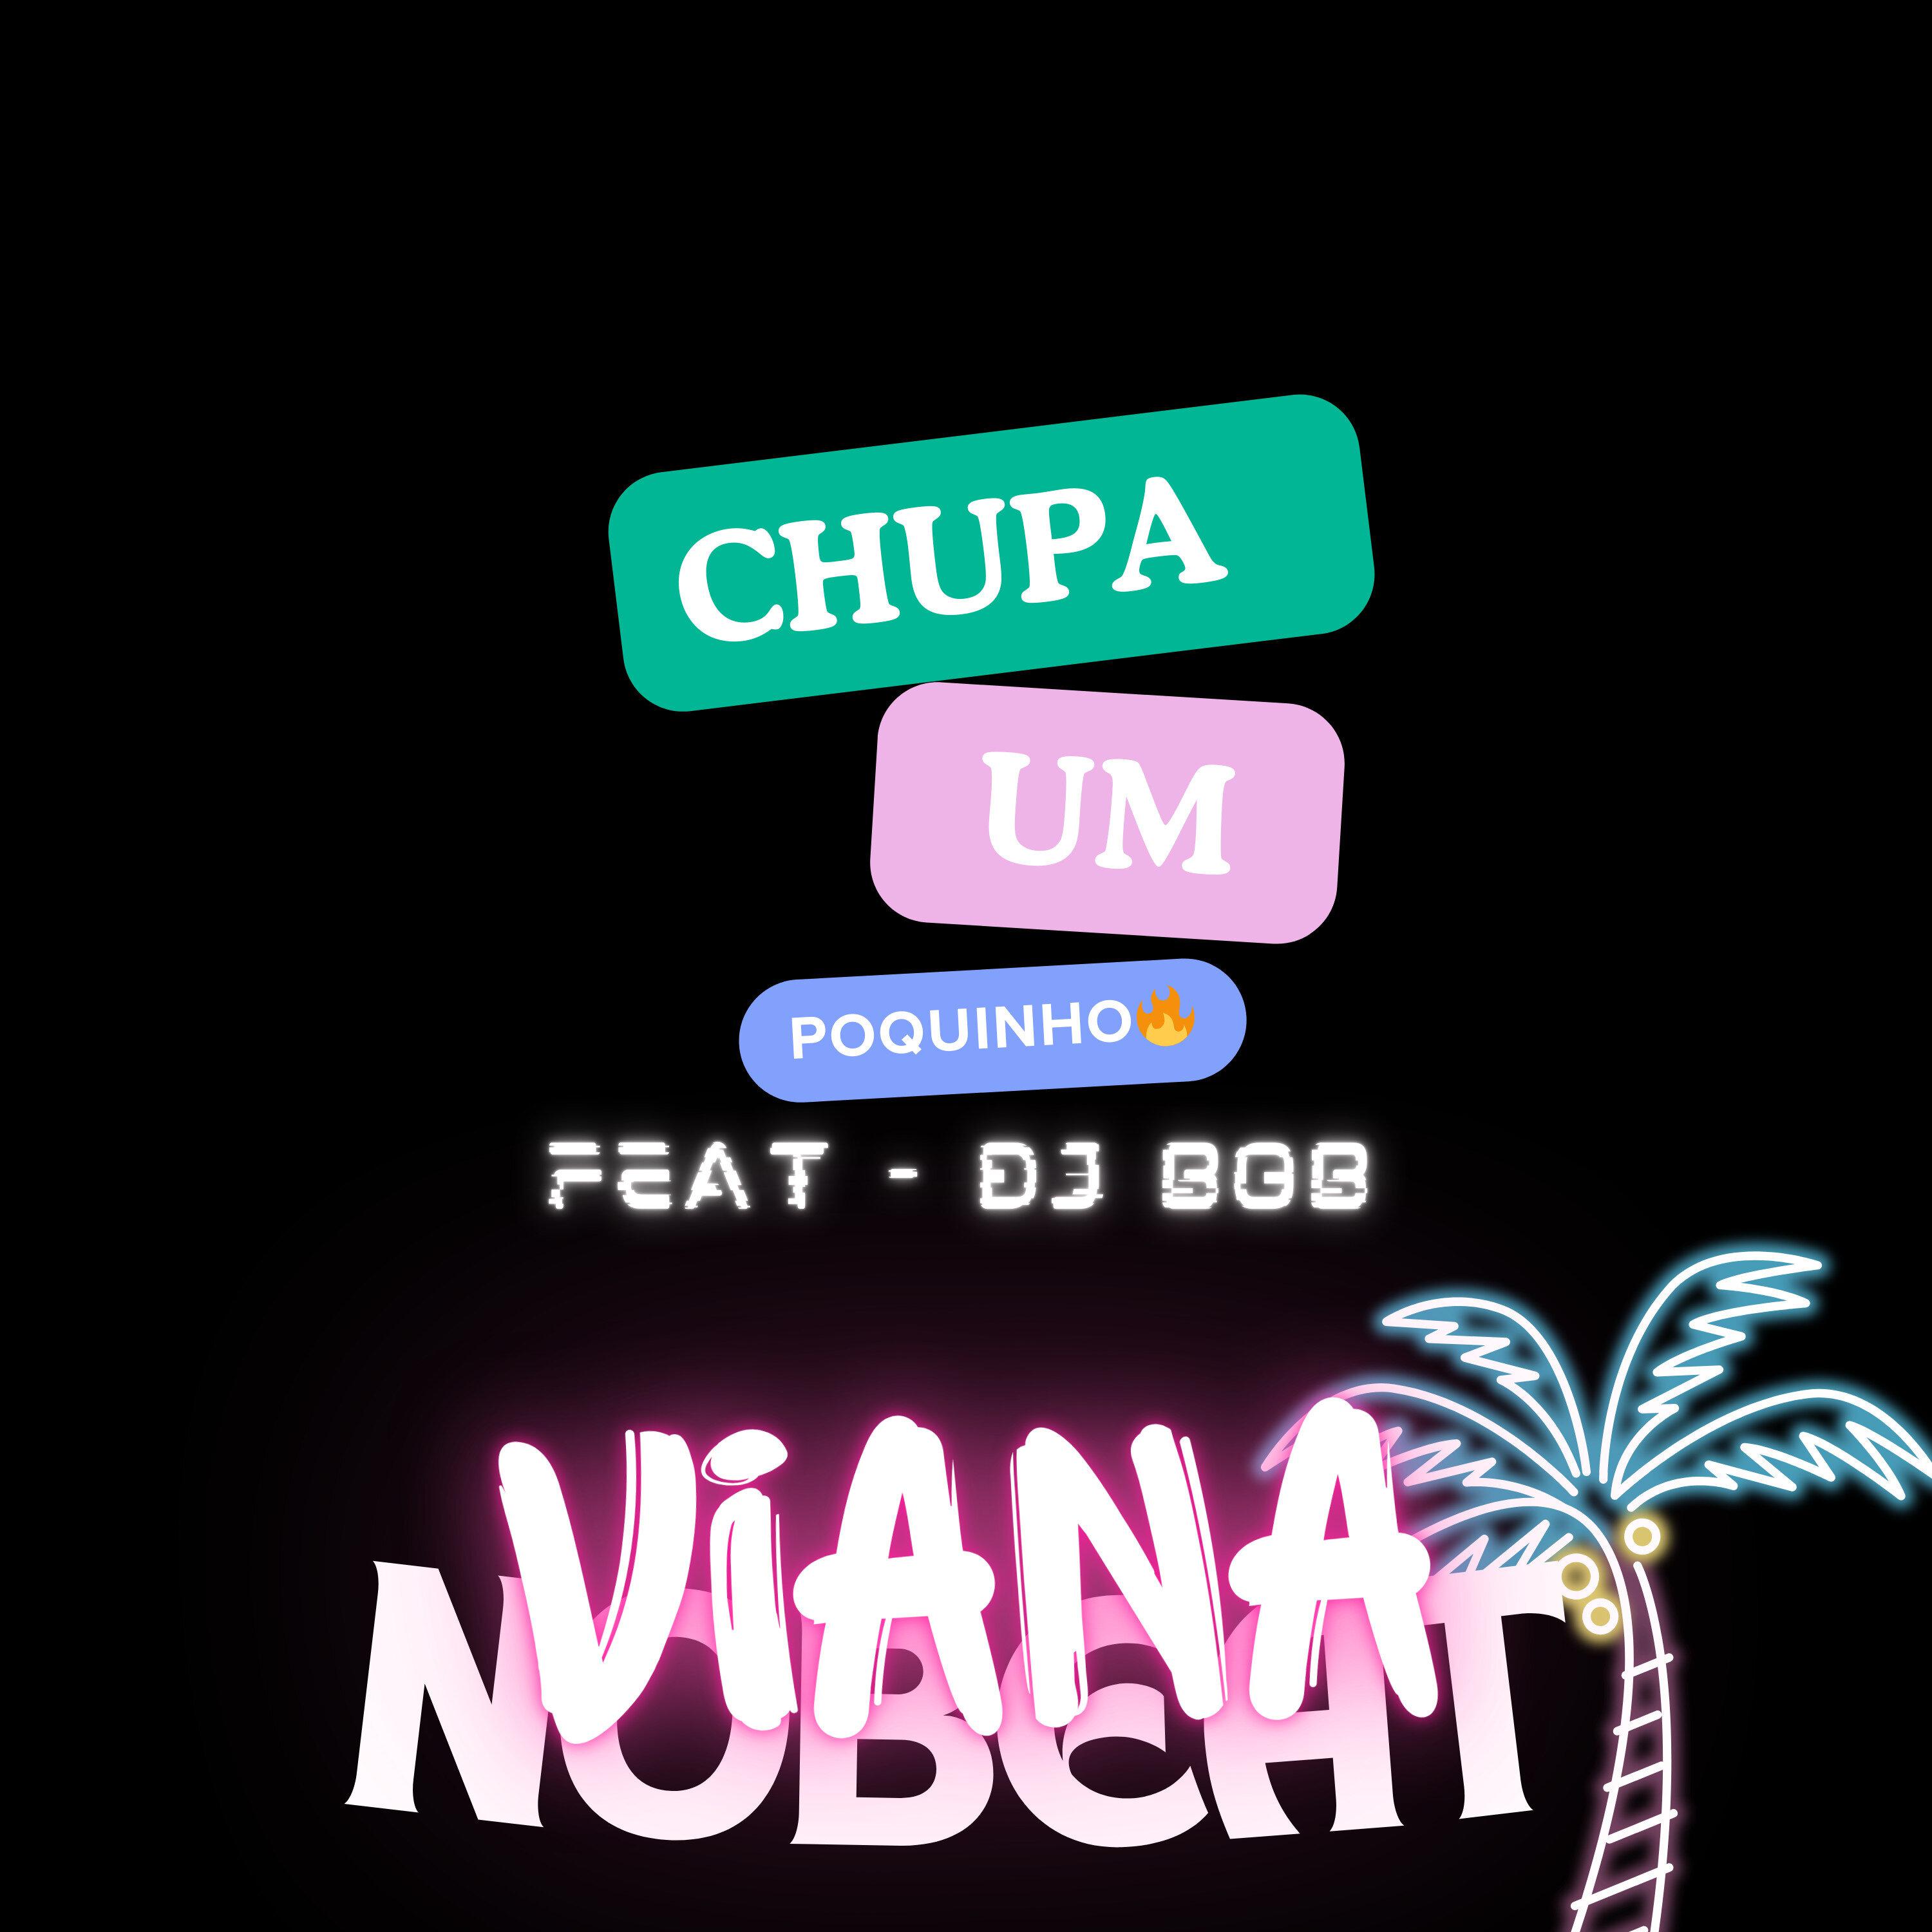 Viana No Beat - Chupa um Poquinho (feat. Dj Bob)